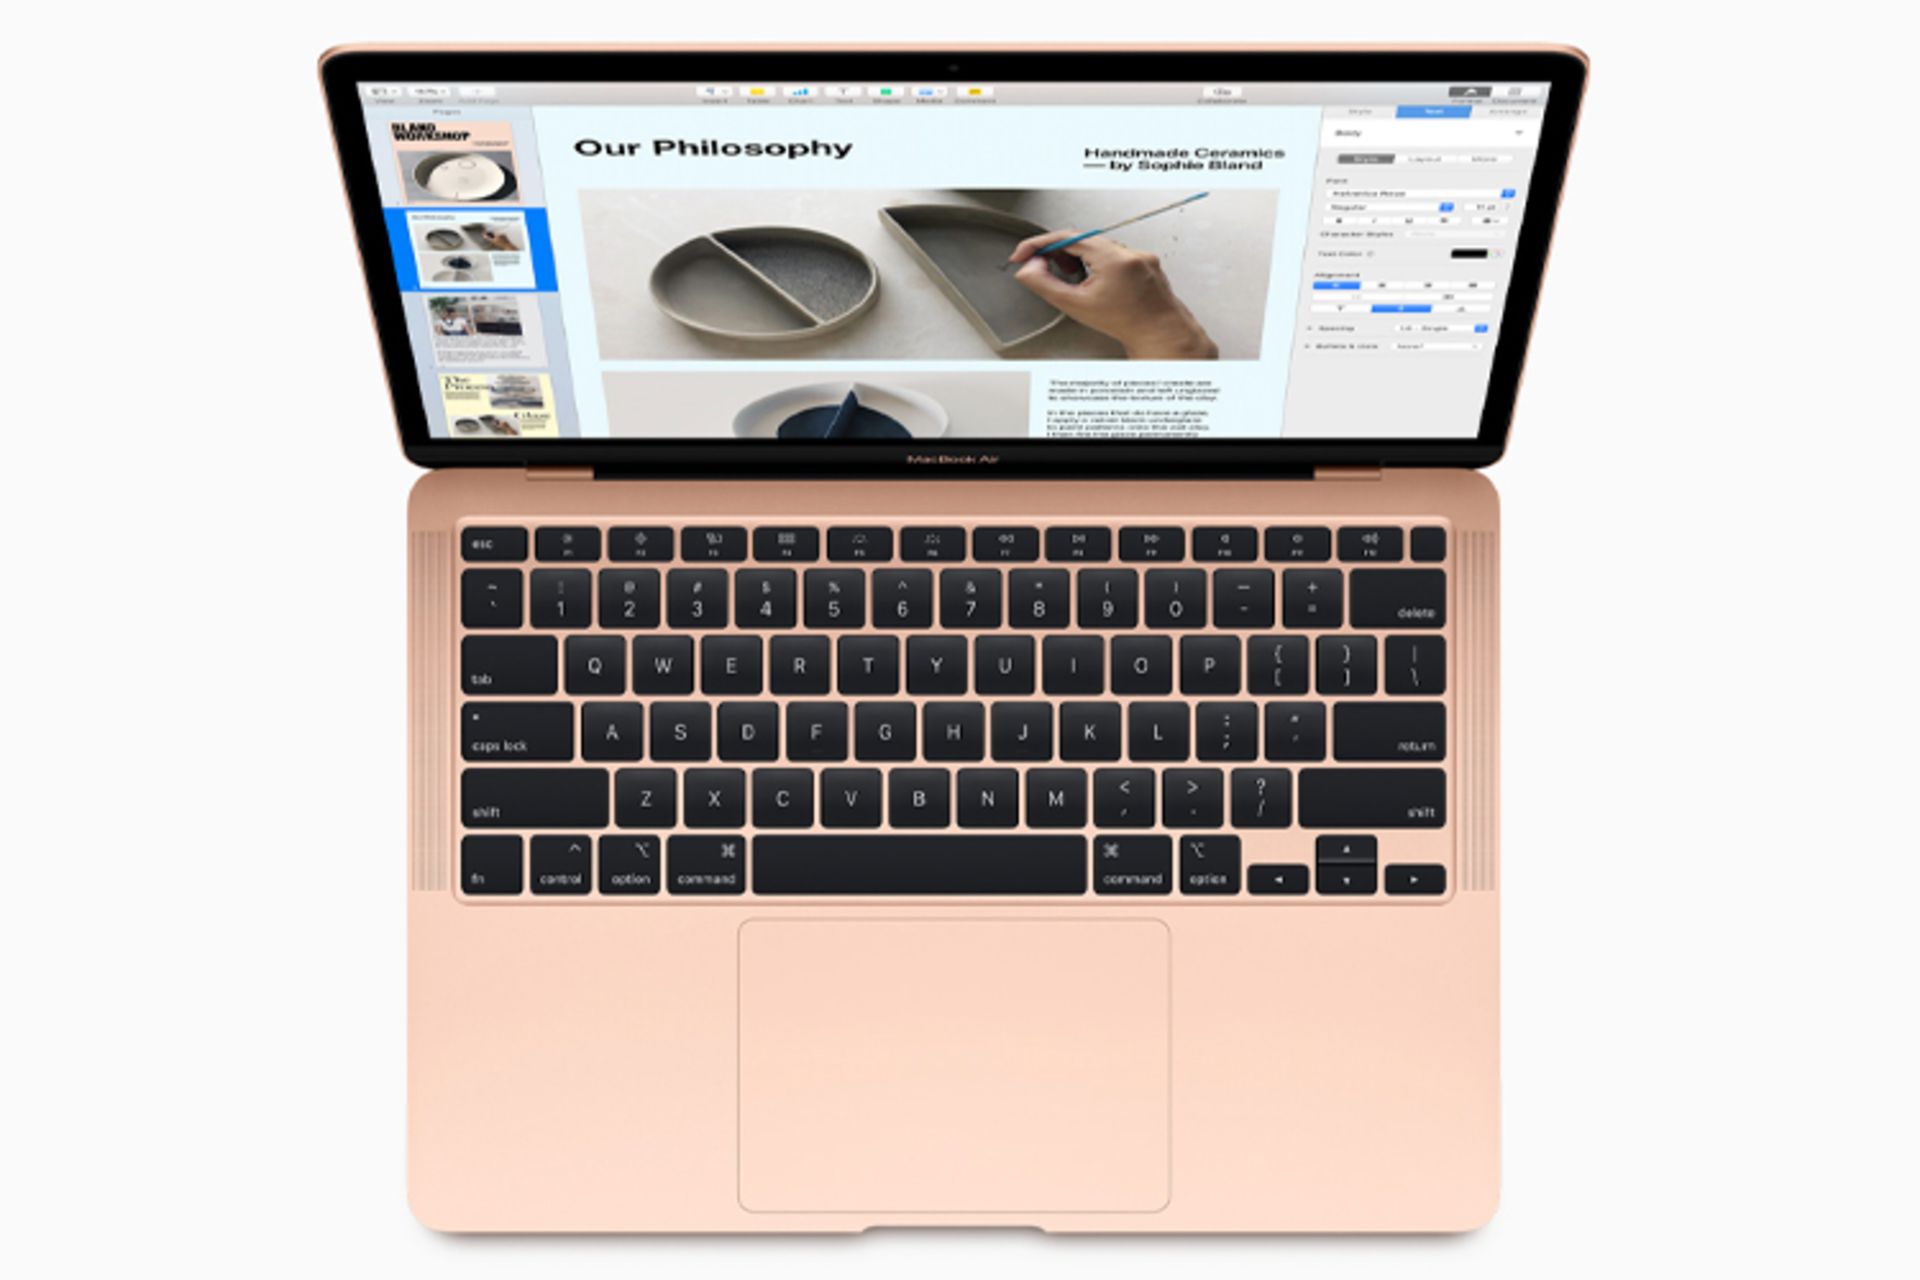 مک بوک ایر 2020 اپل / Apple MacBook Air 2020